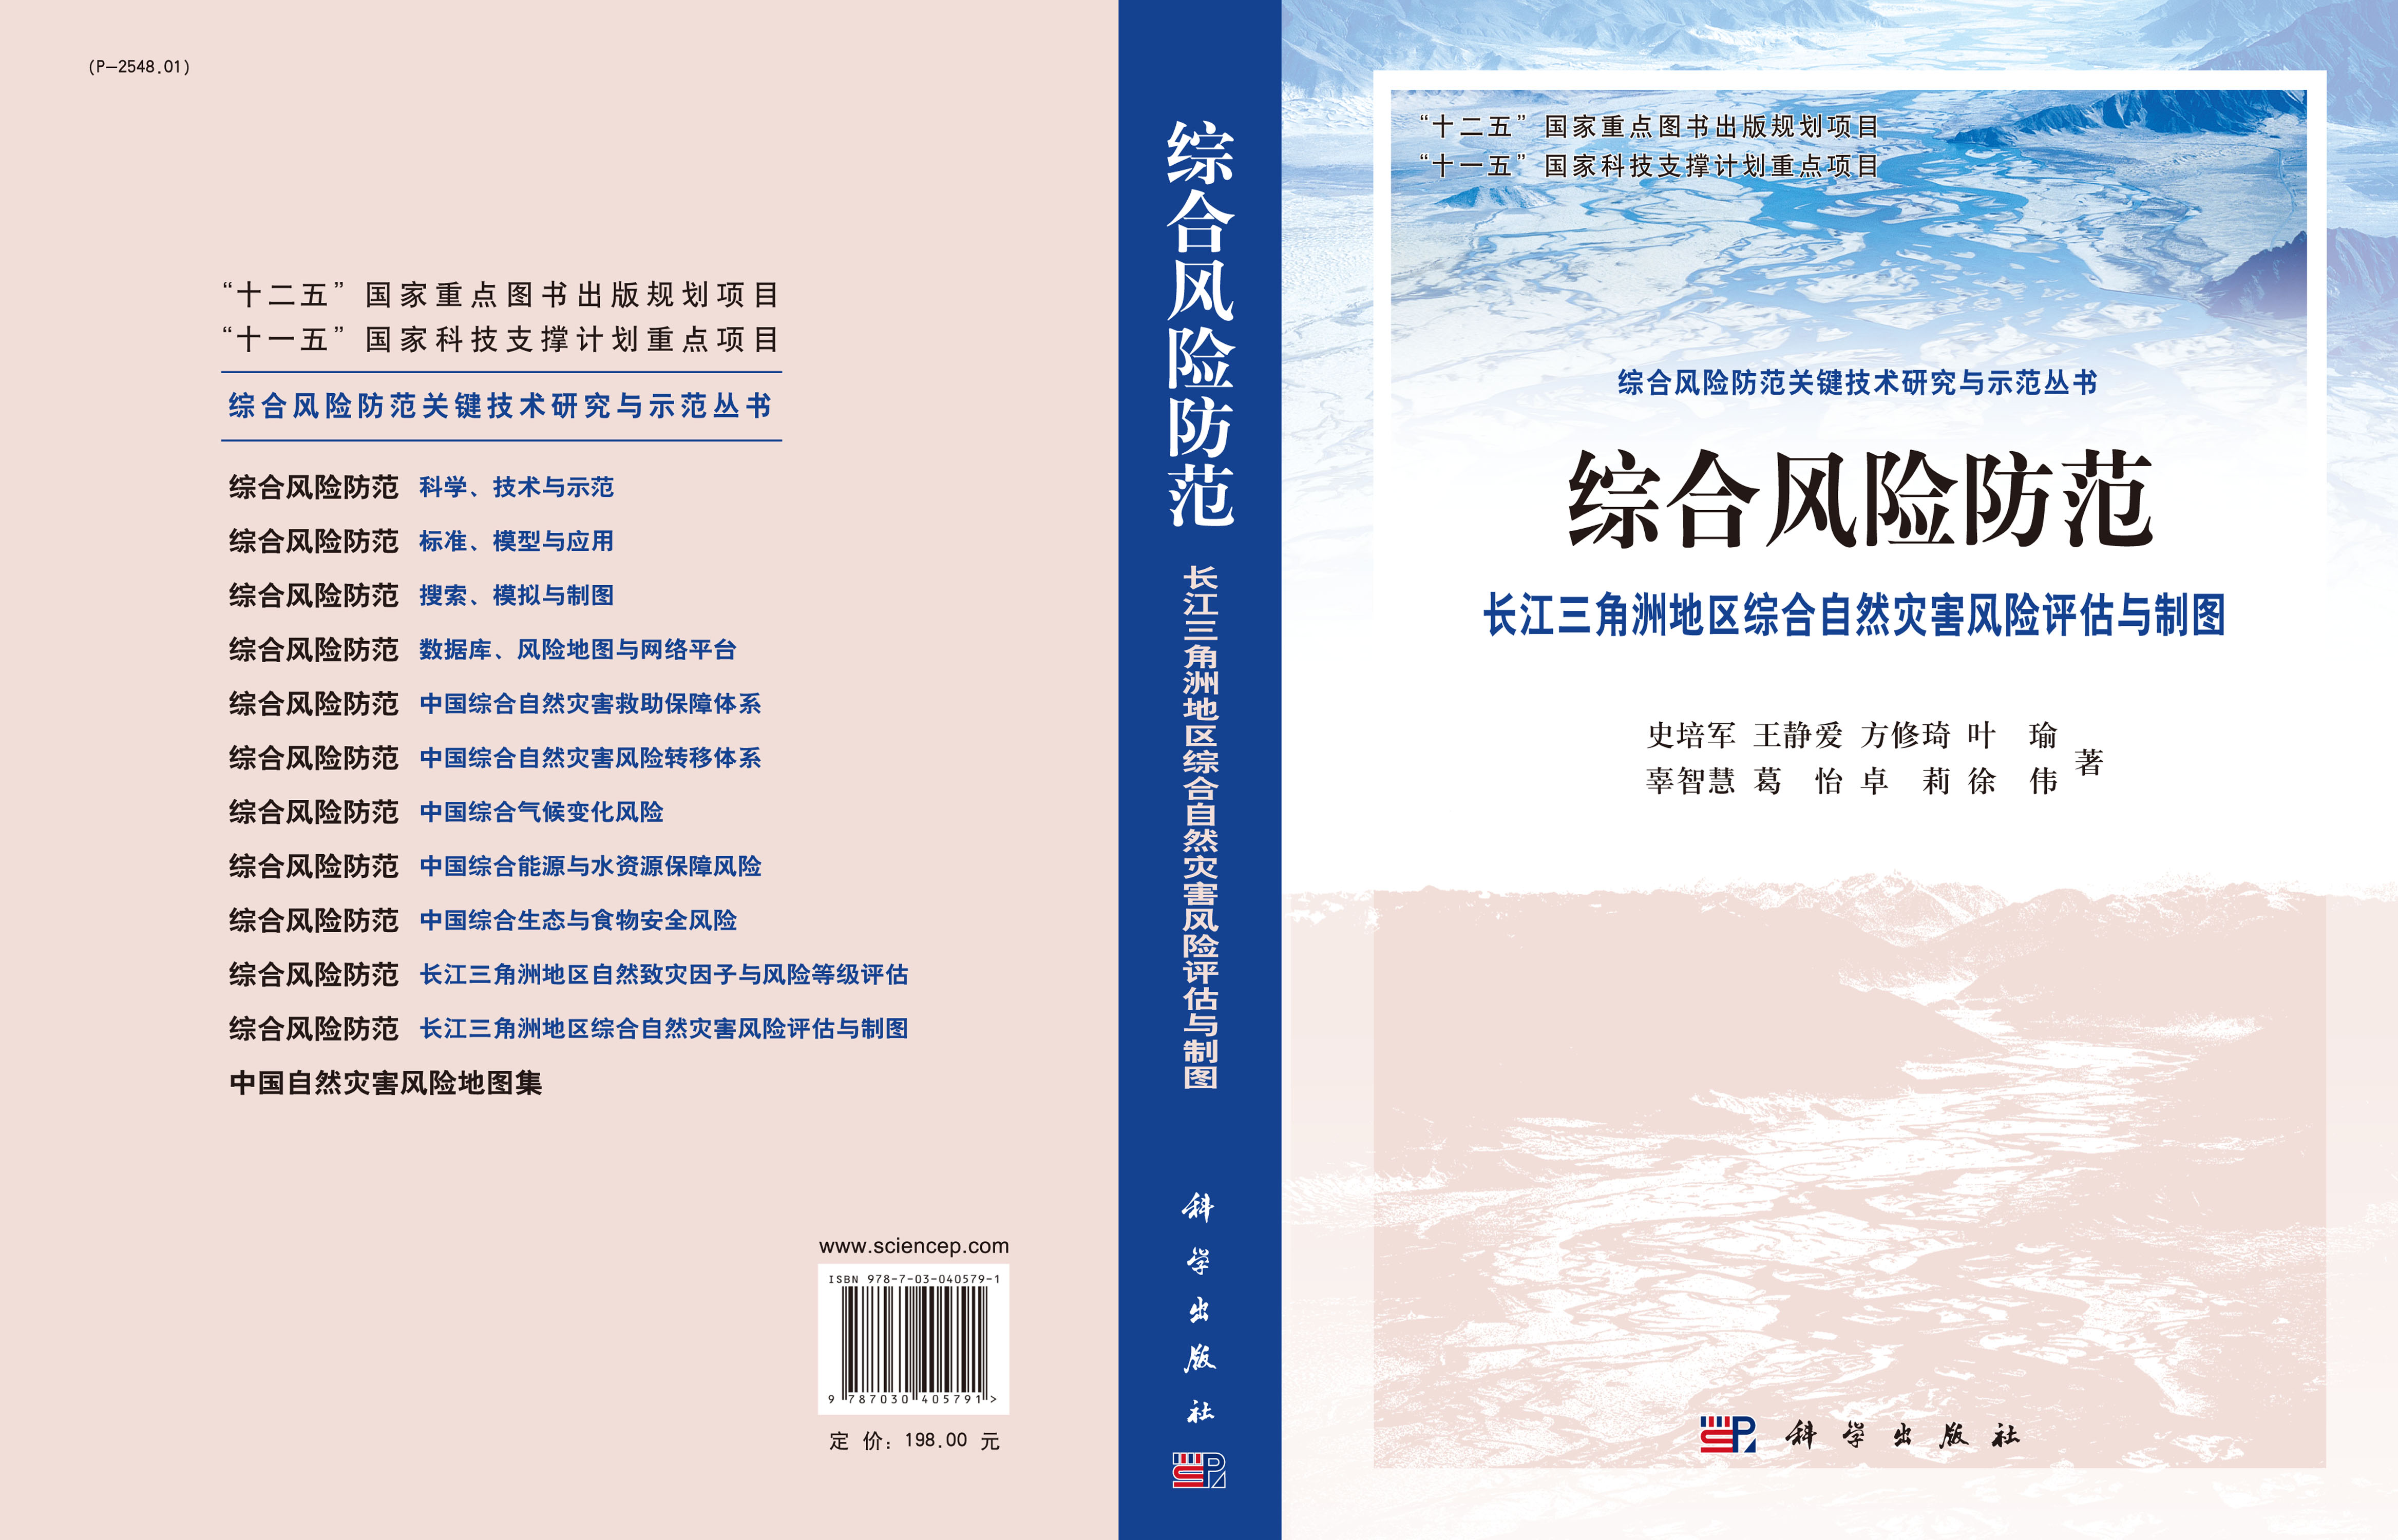 综合风险防范  长江三角洲地区综合自然灾害风险评估与制图